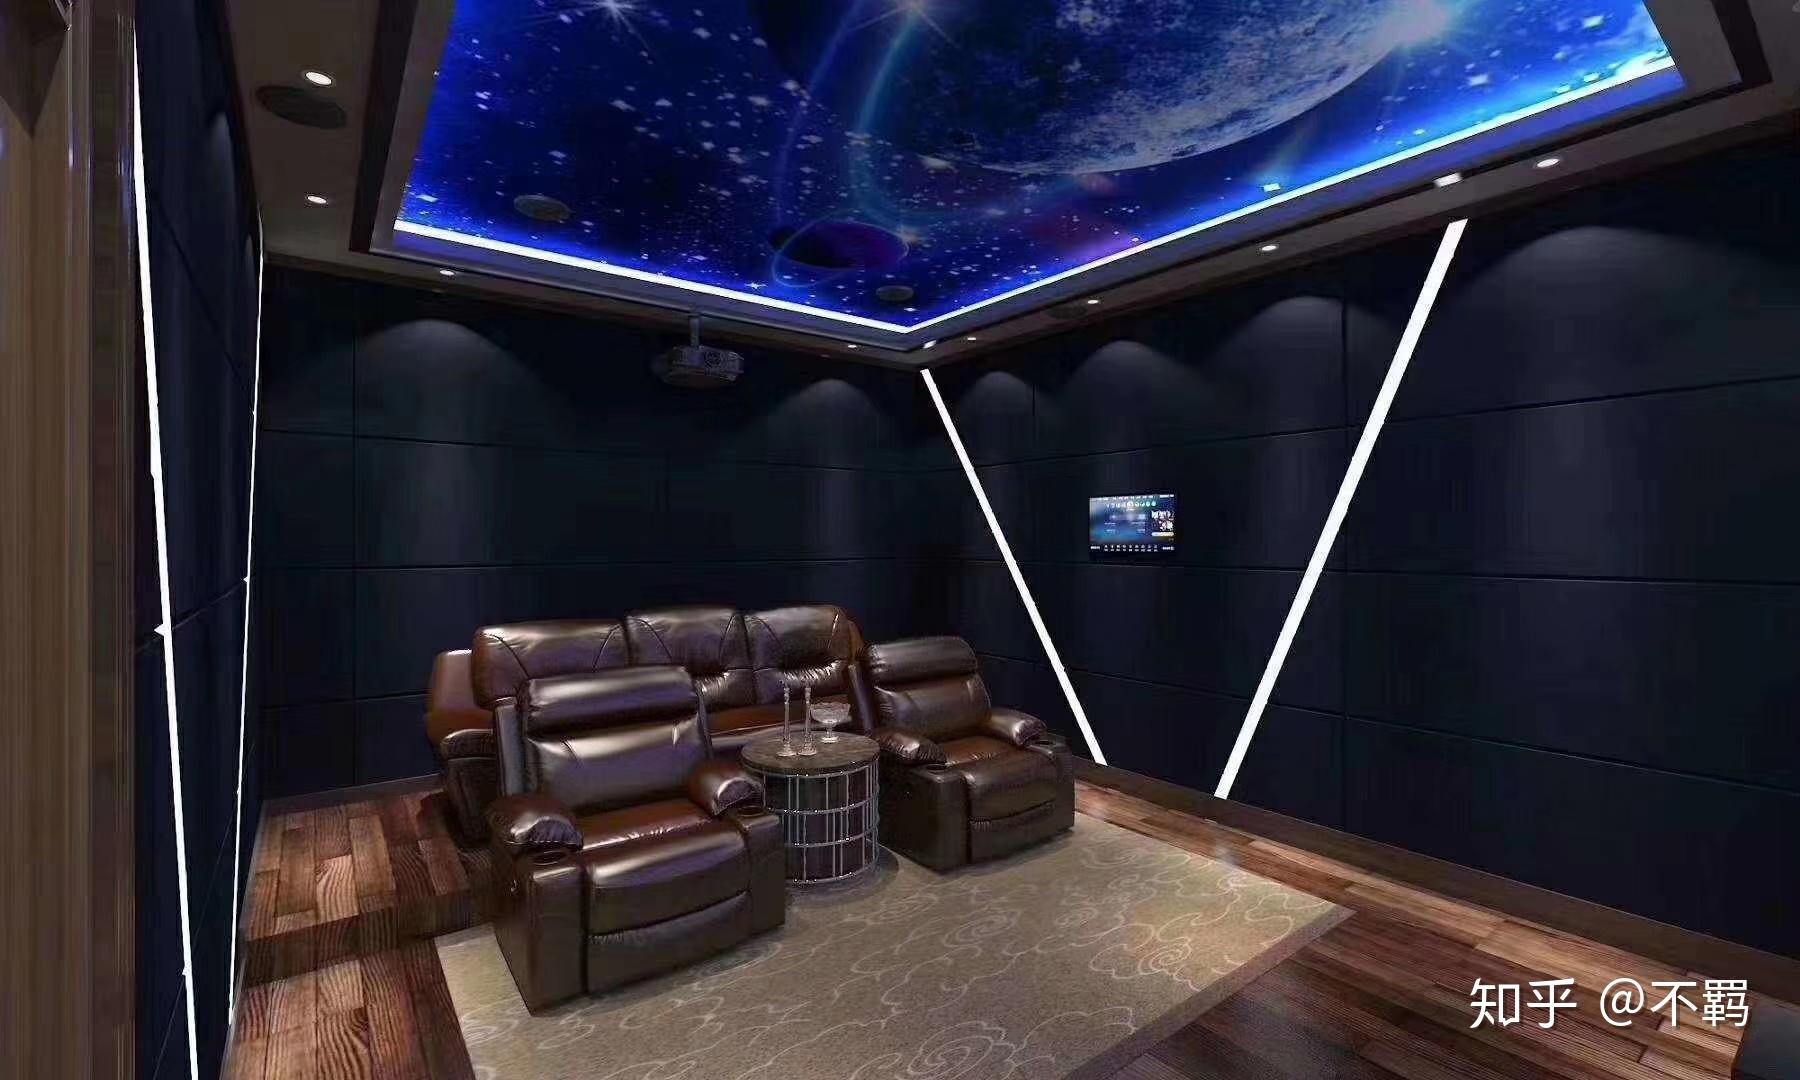 家庭影院沙发组合太空舱躺椅私人影音室影视厅真皮电动多功能 - Product demonstration - Xiang Meijia